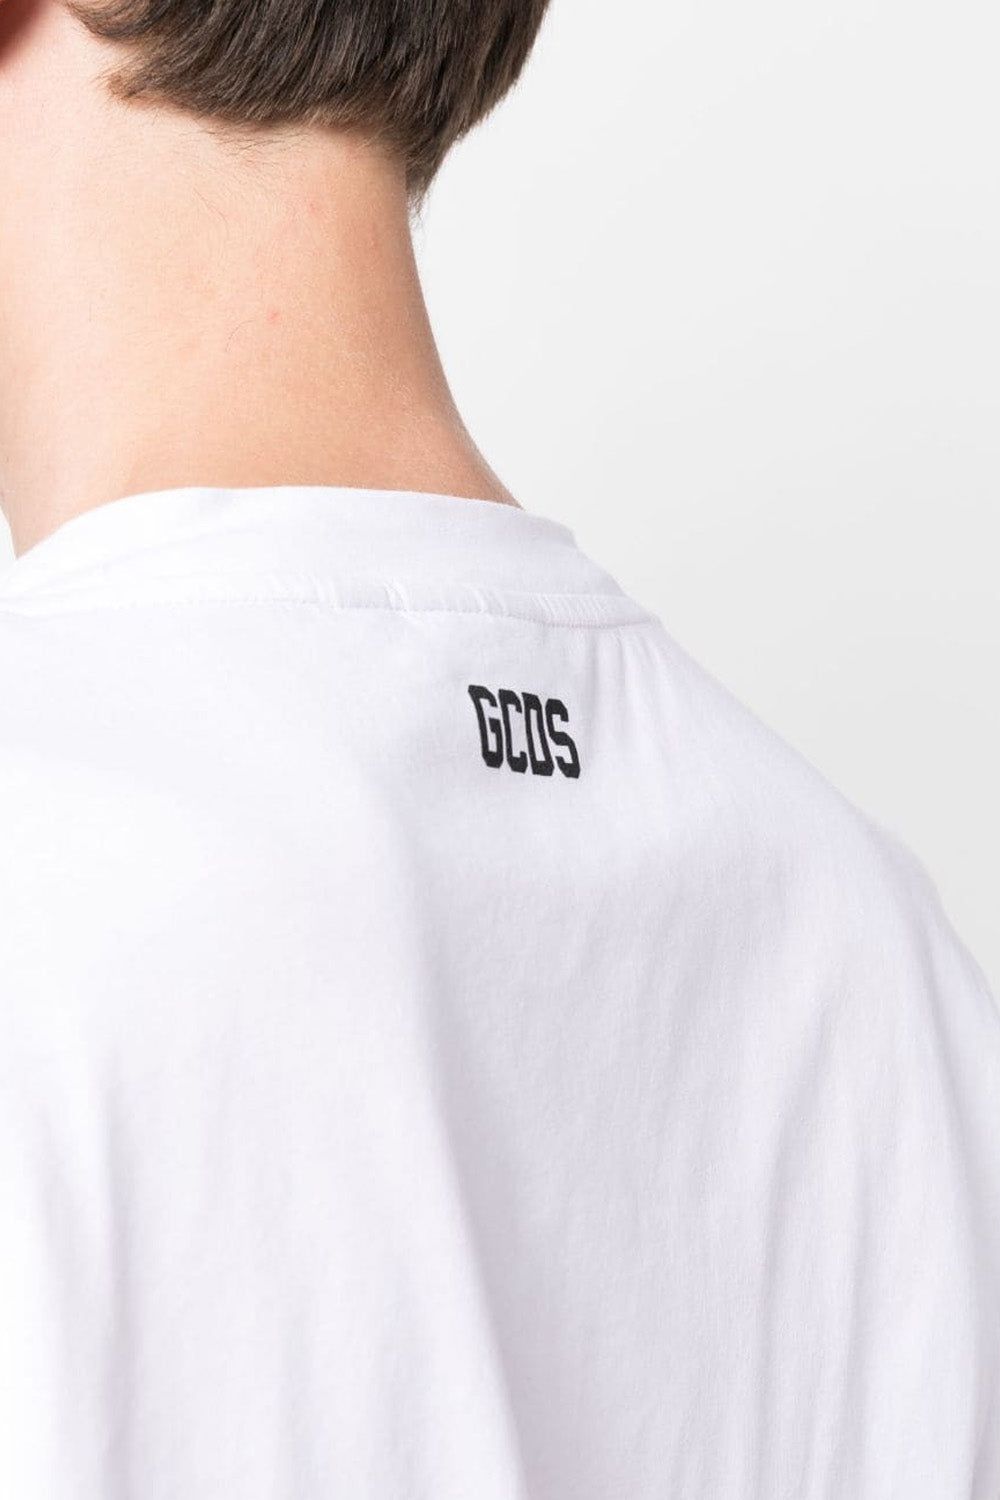 Gcds logo-print cotton T-shirt